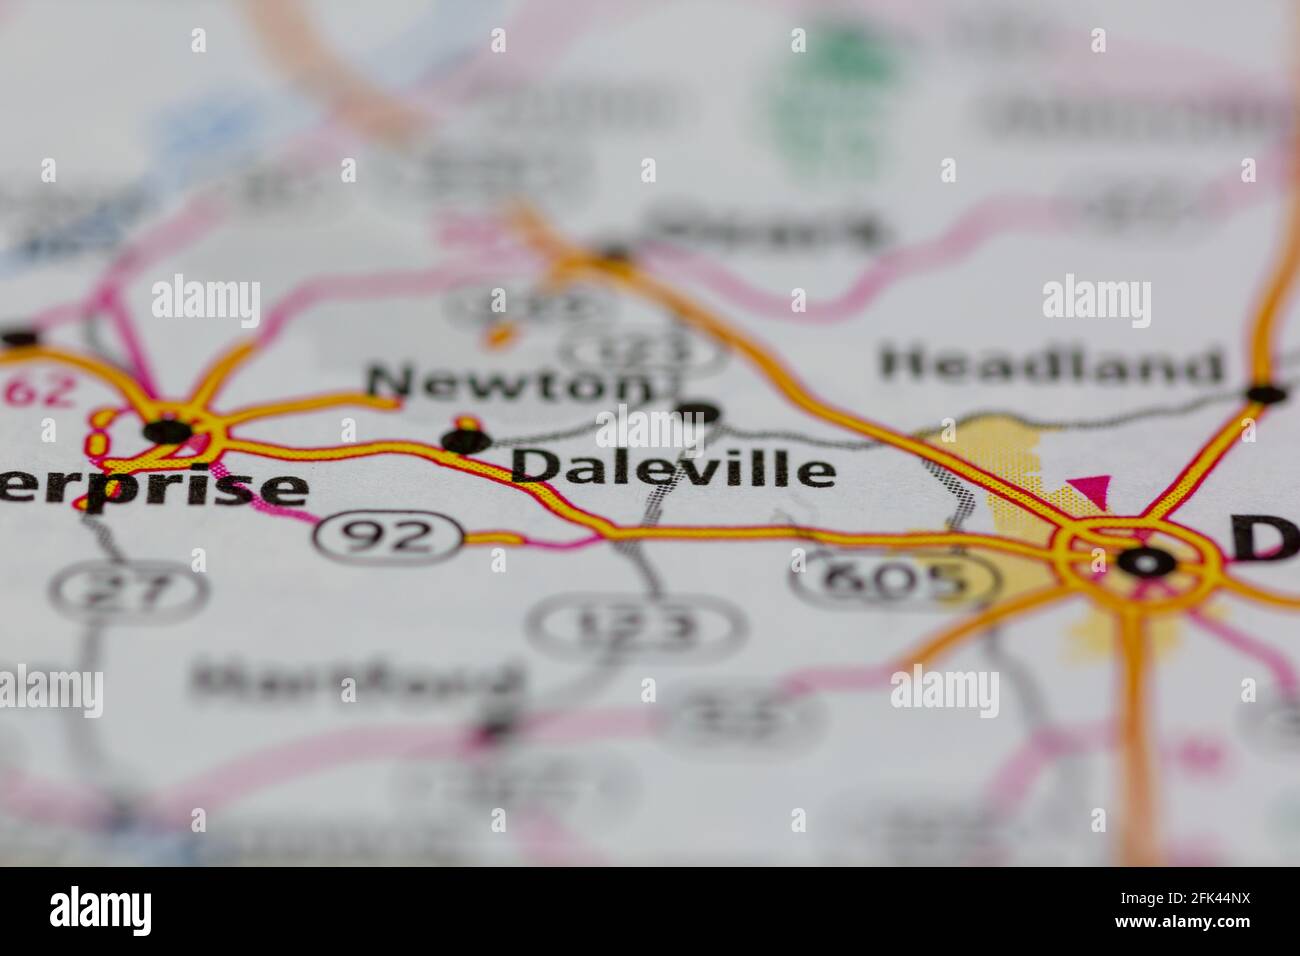 Daleville Alabama USA mostrato su una mappa geografica o su una strada mappa Foto Stock